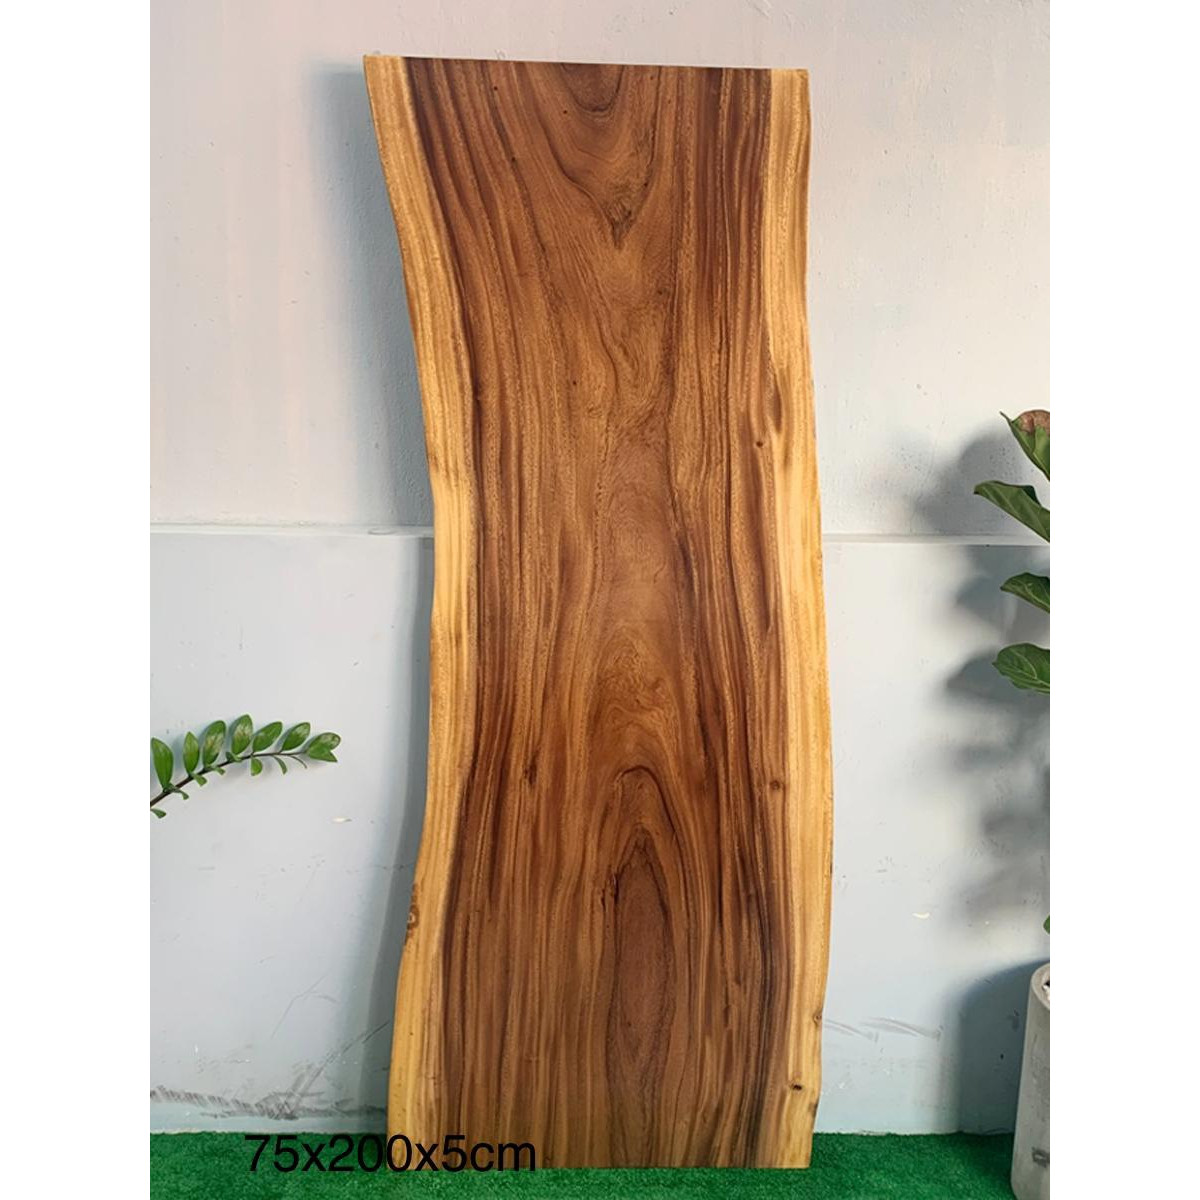 Mặt bàn gỗ me tây nguyên tấm KT 75x200x5cm